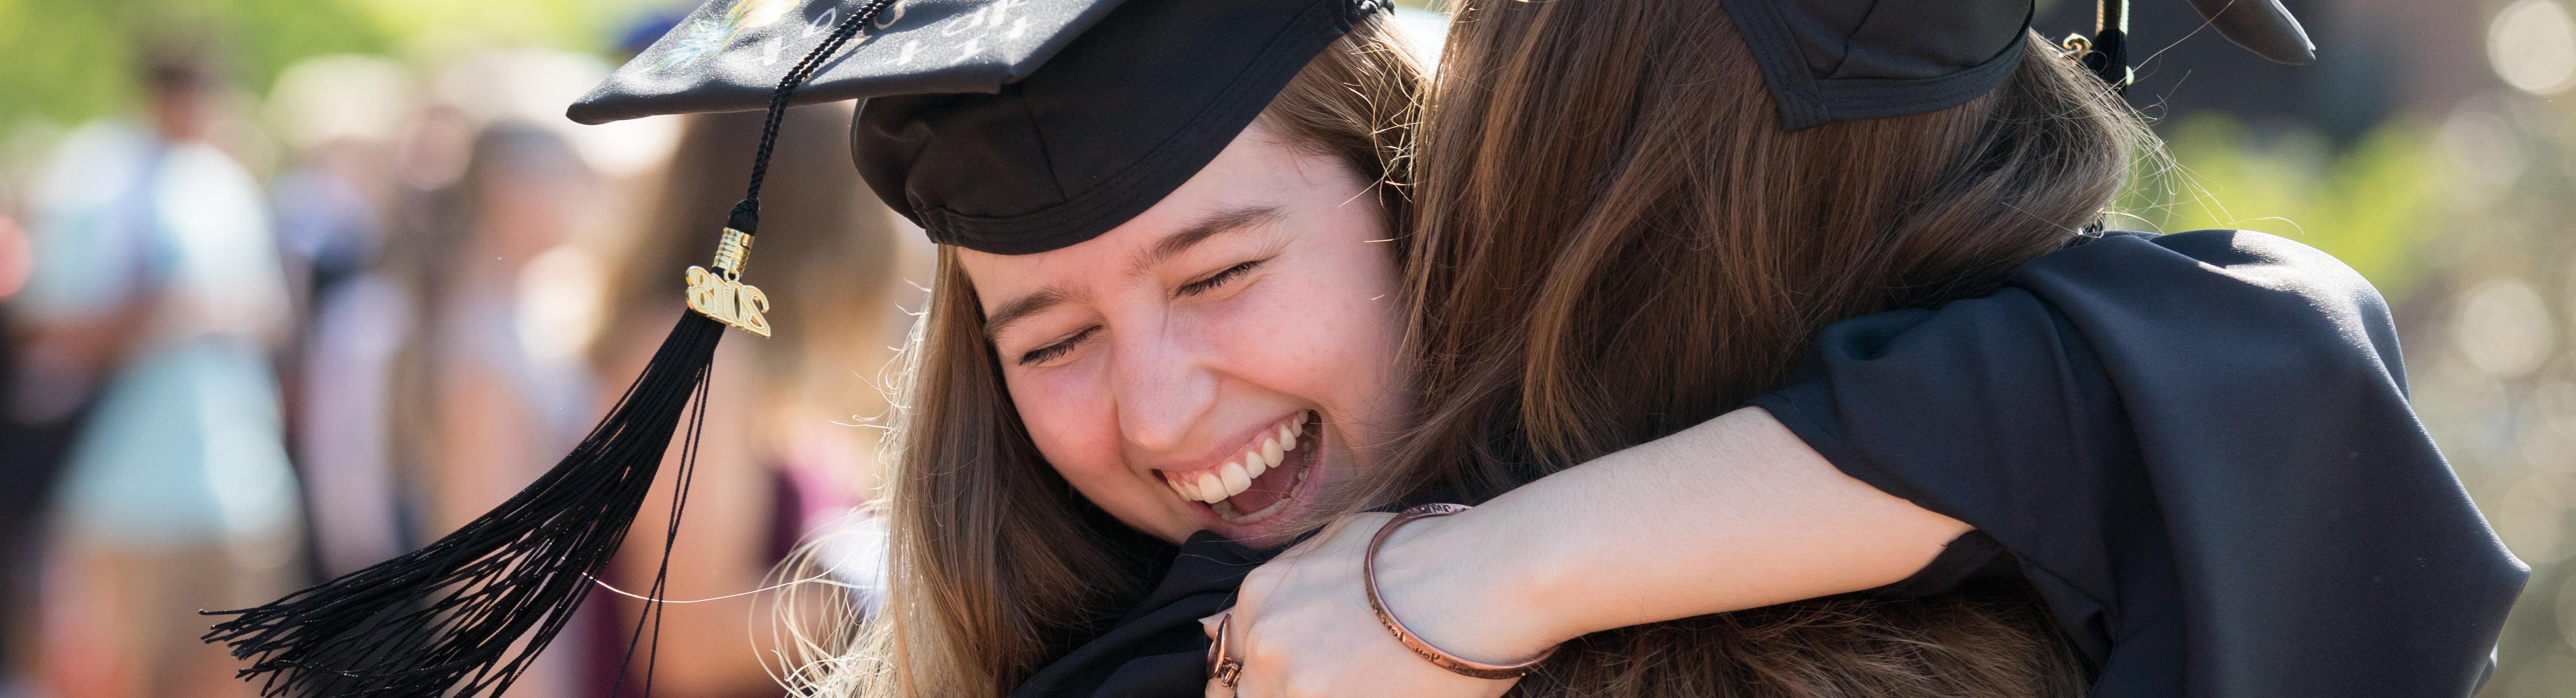 Students hugging at graduation.